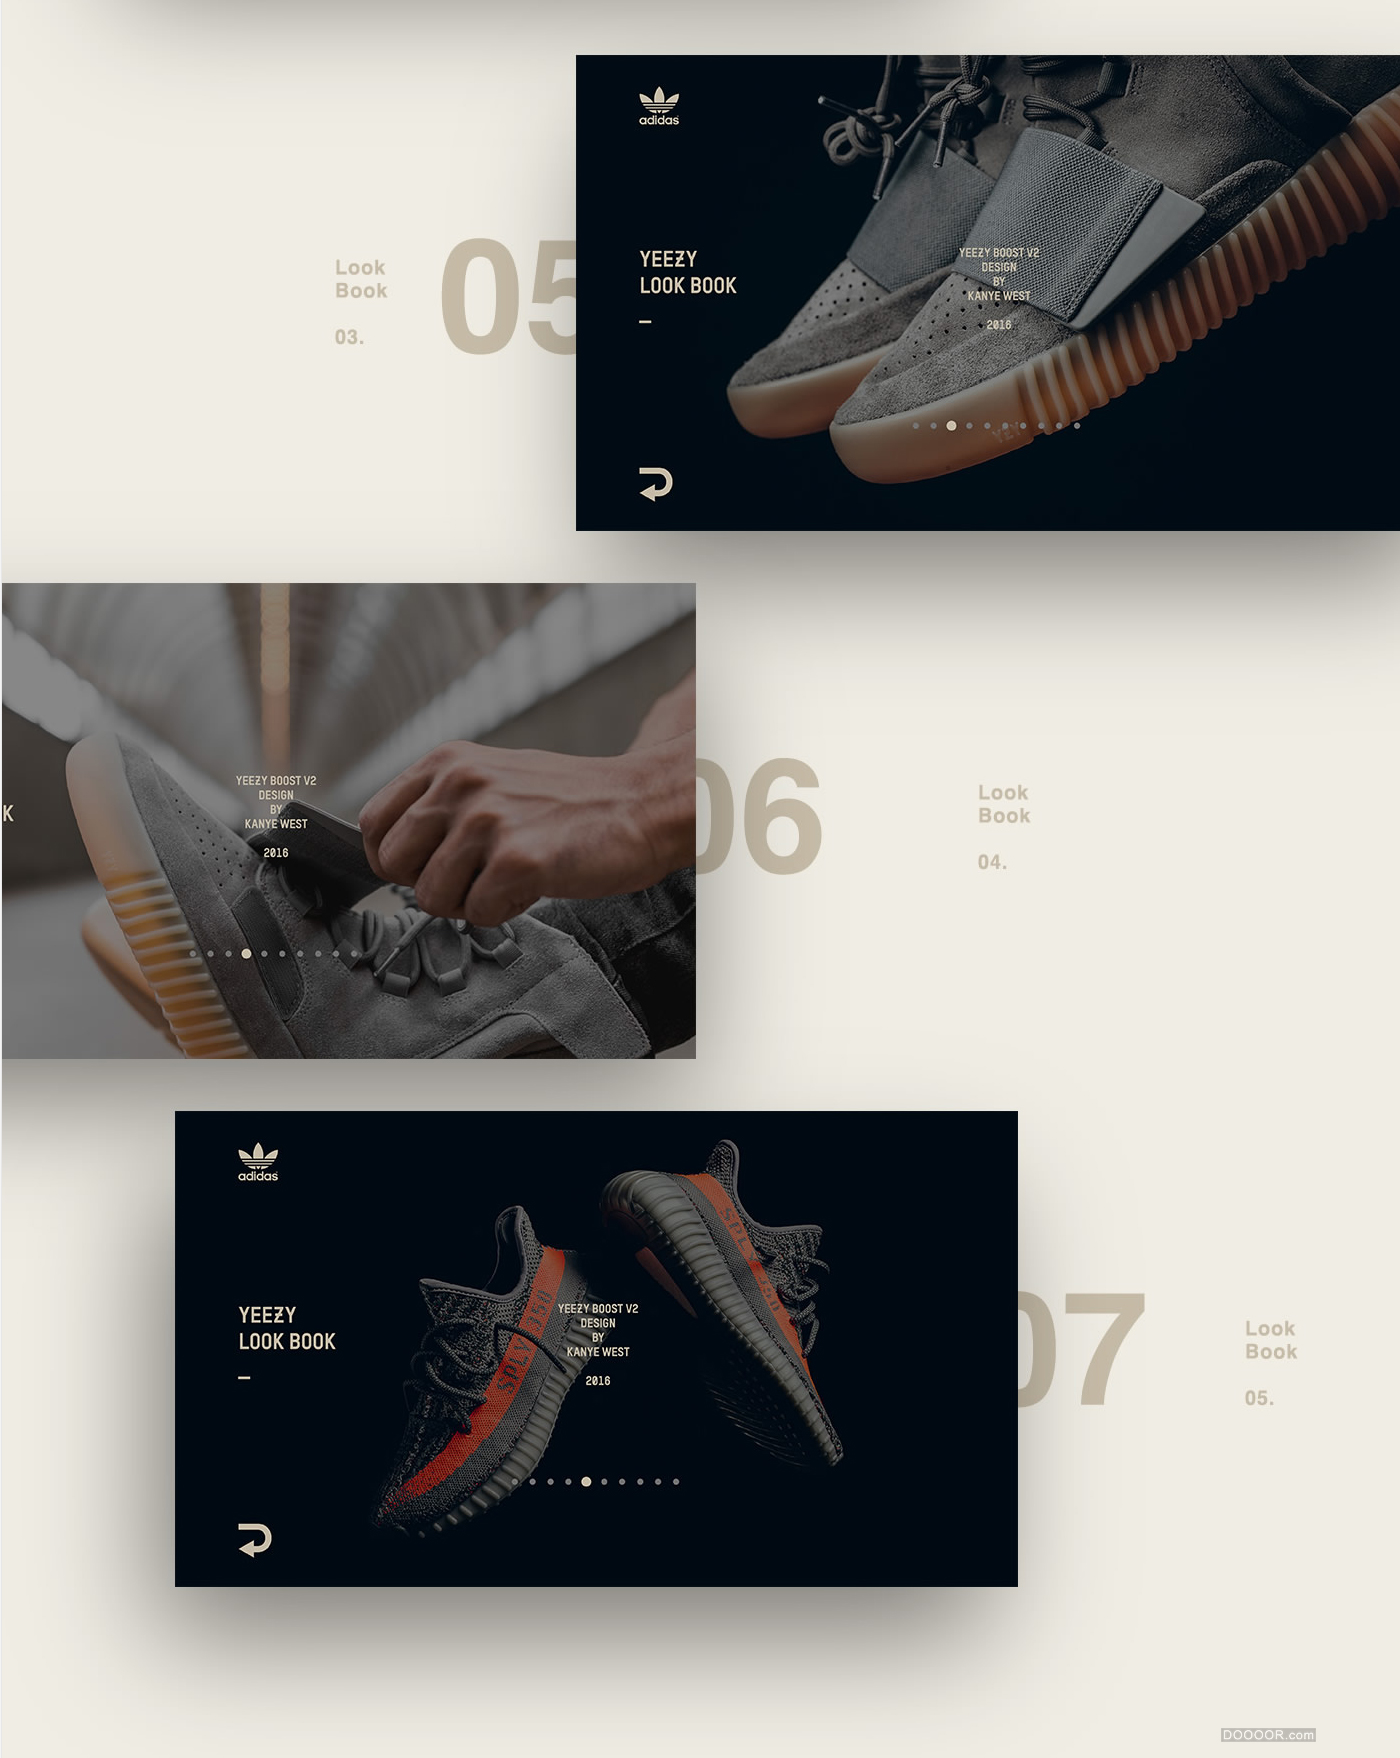 [UI-Design]-Adidas-Yeezy-Promotion-Kiosk_08.jpg